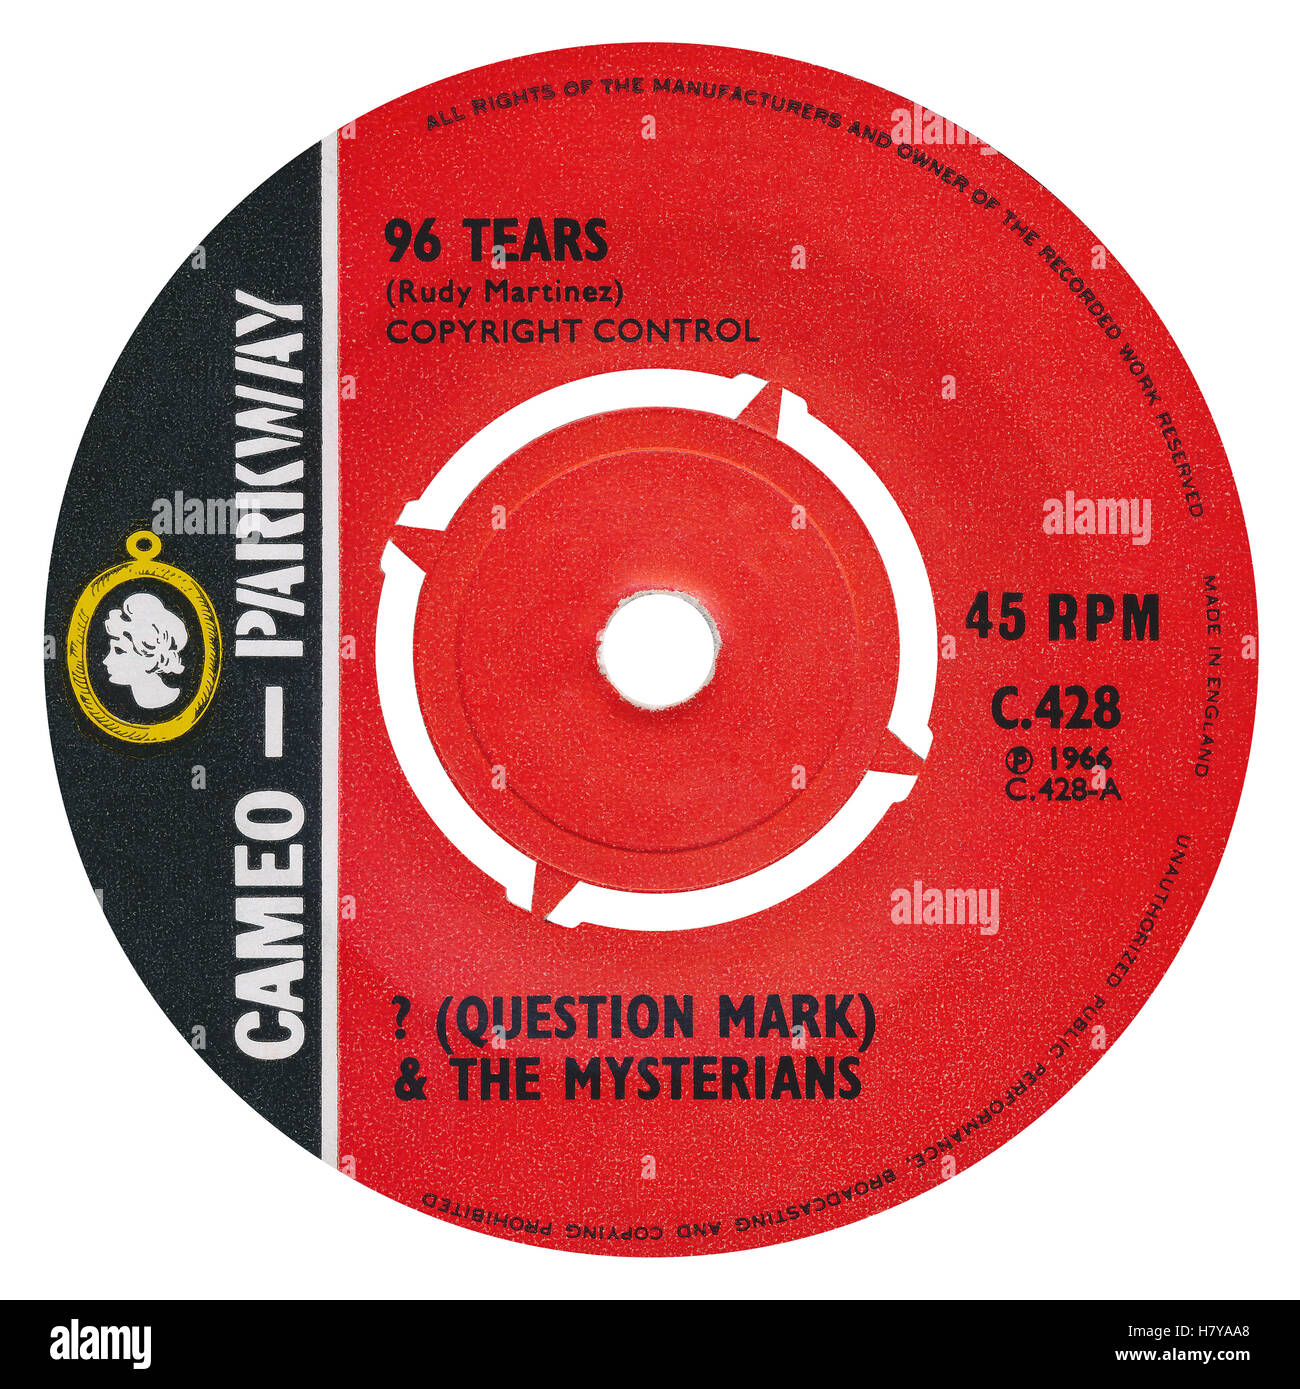 45 RPM 7' UK etichetta discografica di 96 lacrime da ? (Punto interrogativo) e l'Mysterians sull'etichetta Cameo-Parkway dal 1966 Foto Stock